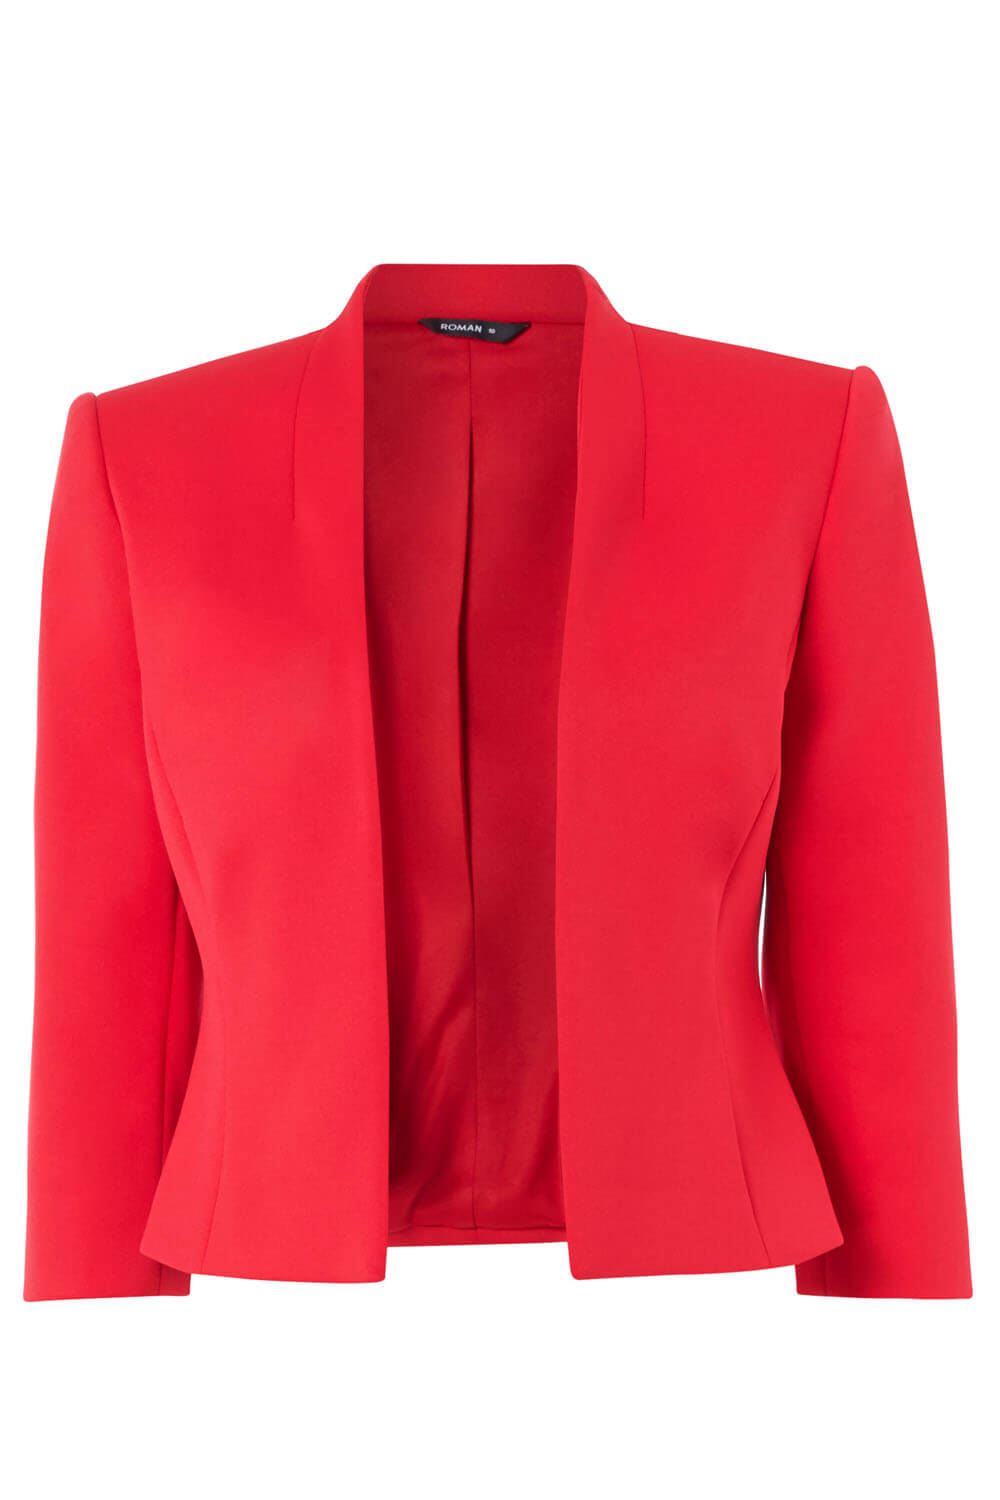 3/4 Sleeve Scuba Jacket in Red - Roman Originals UK